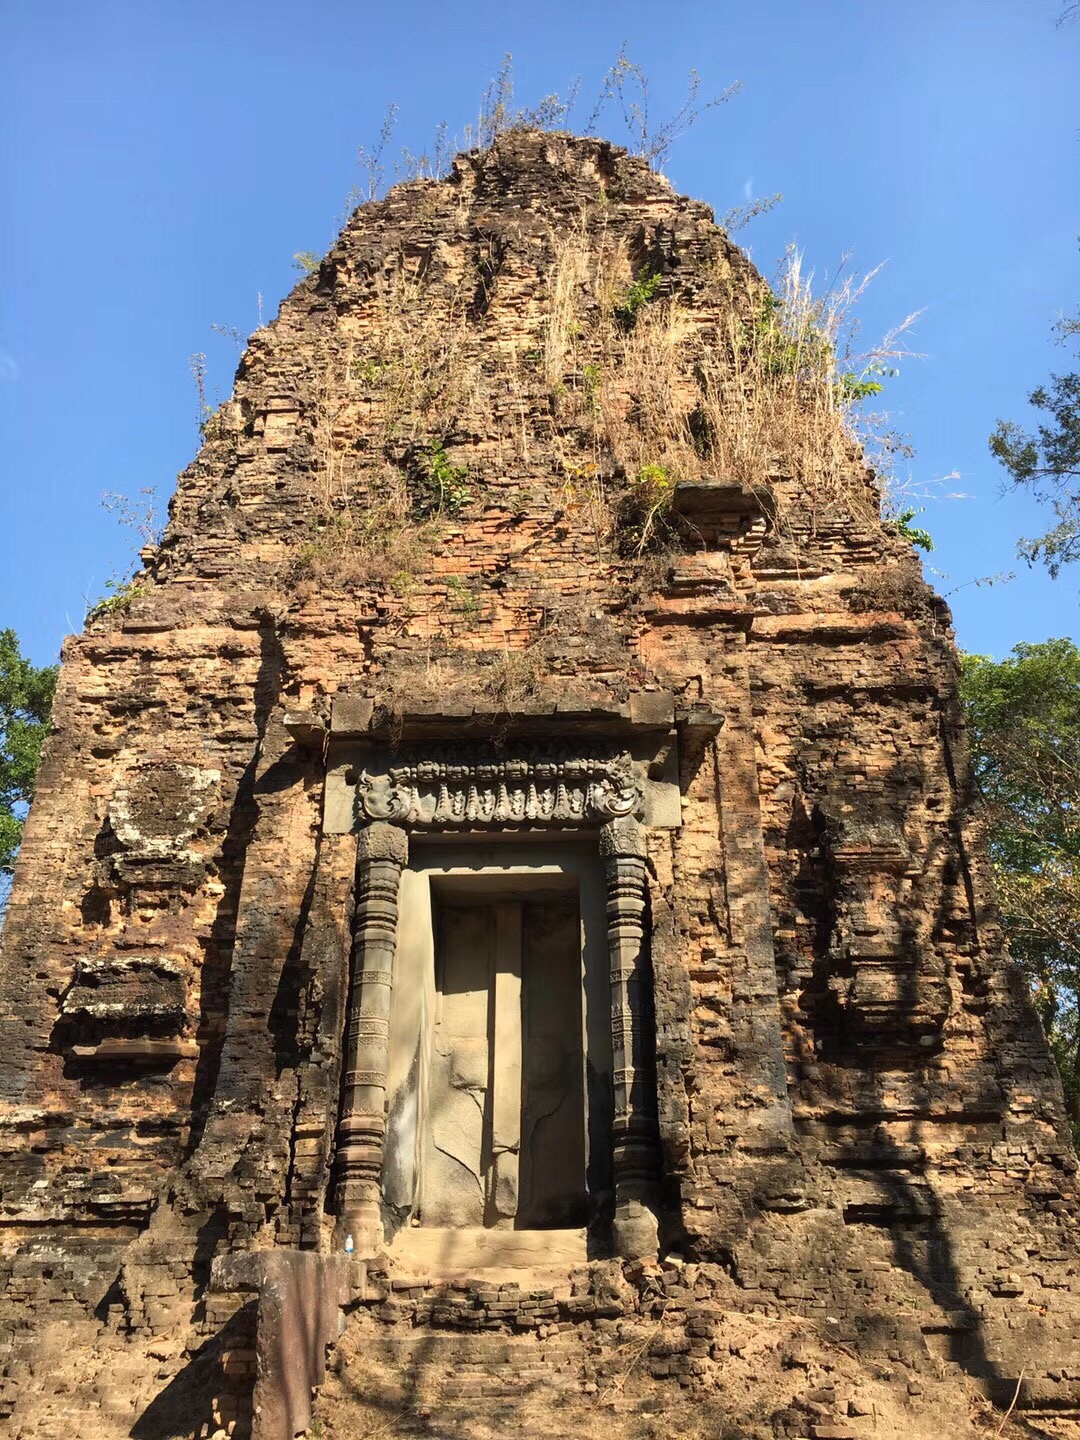 这个寺庙的保存还是非常完好的。特别神奇而又庄严的一个古寺。在丛林中的一个印度寺庙。里面基本上都是方形